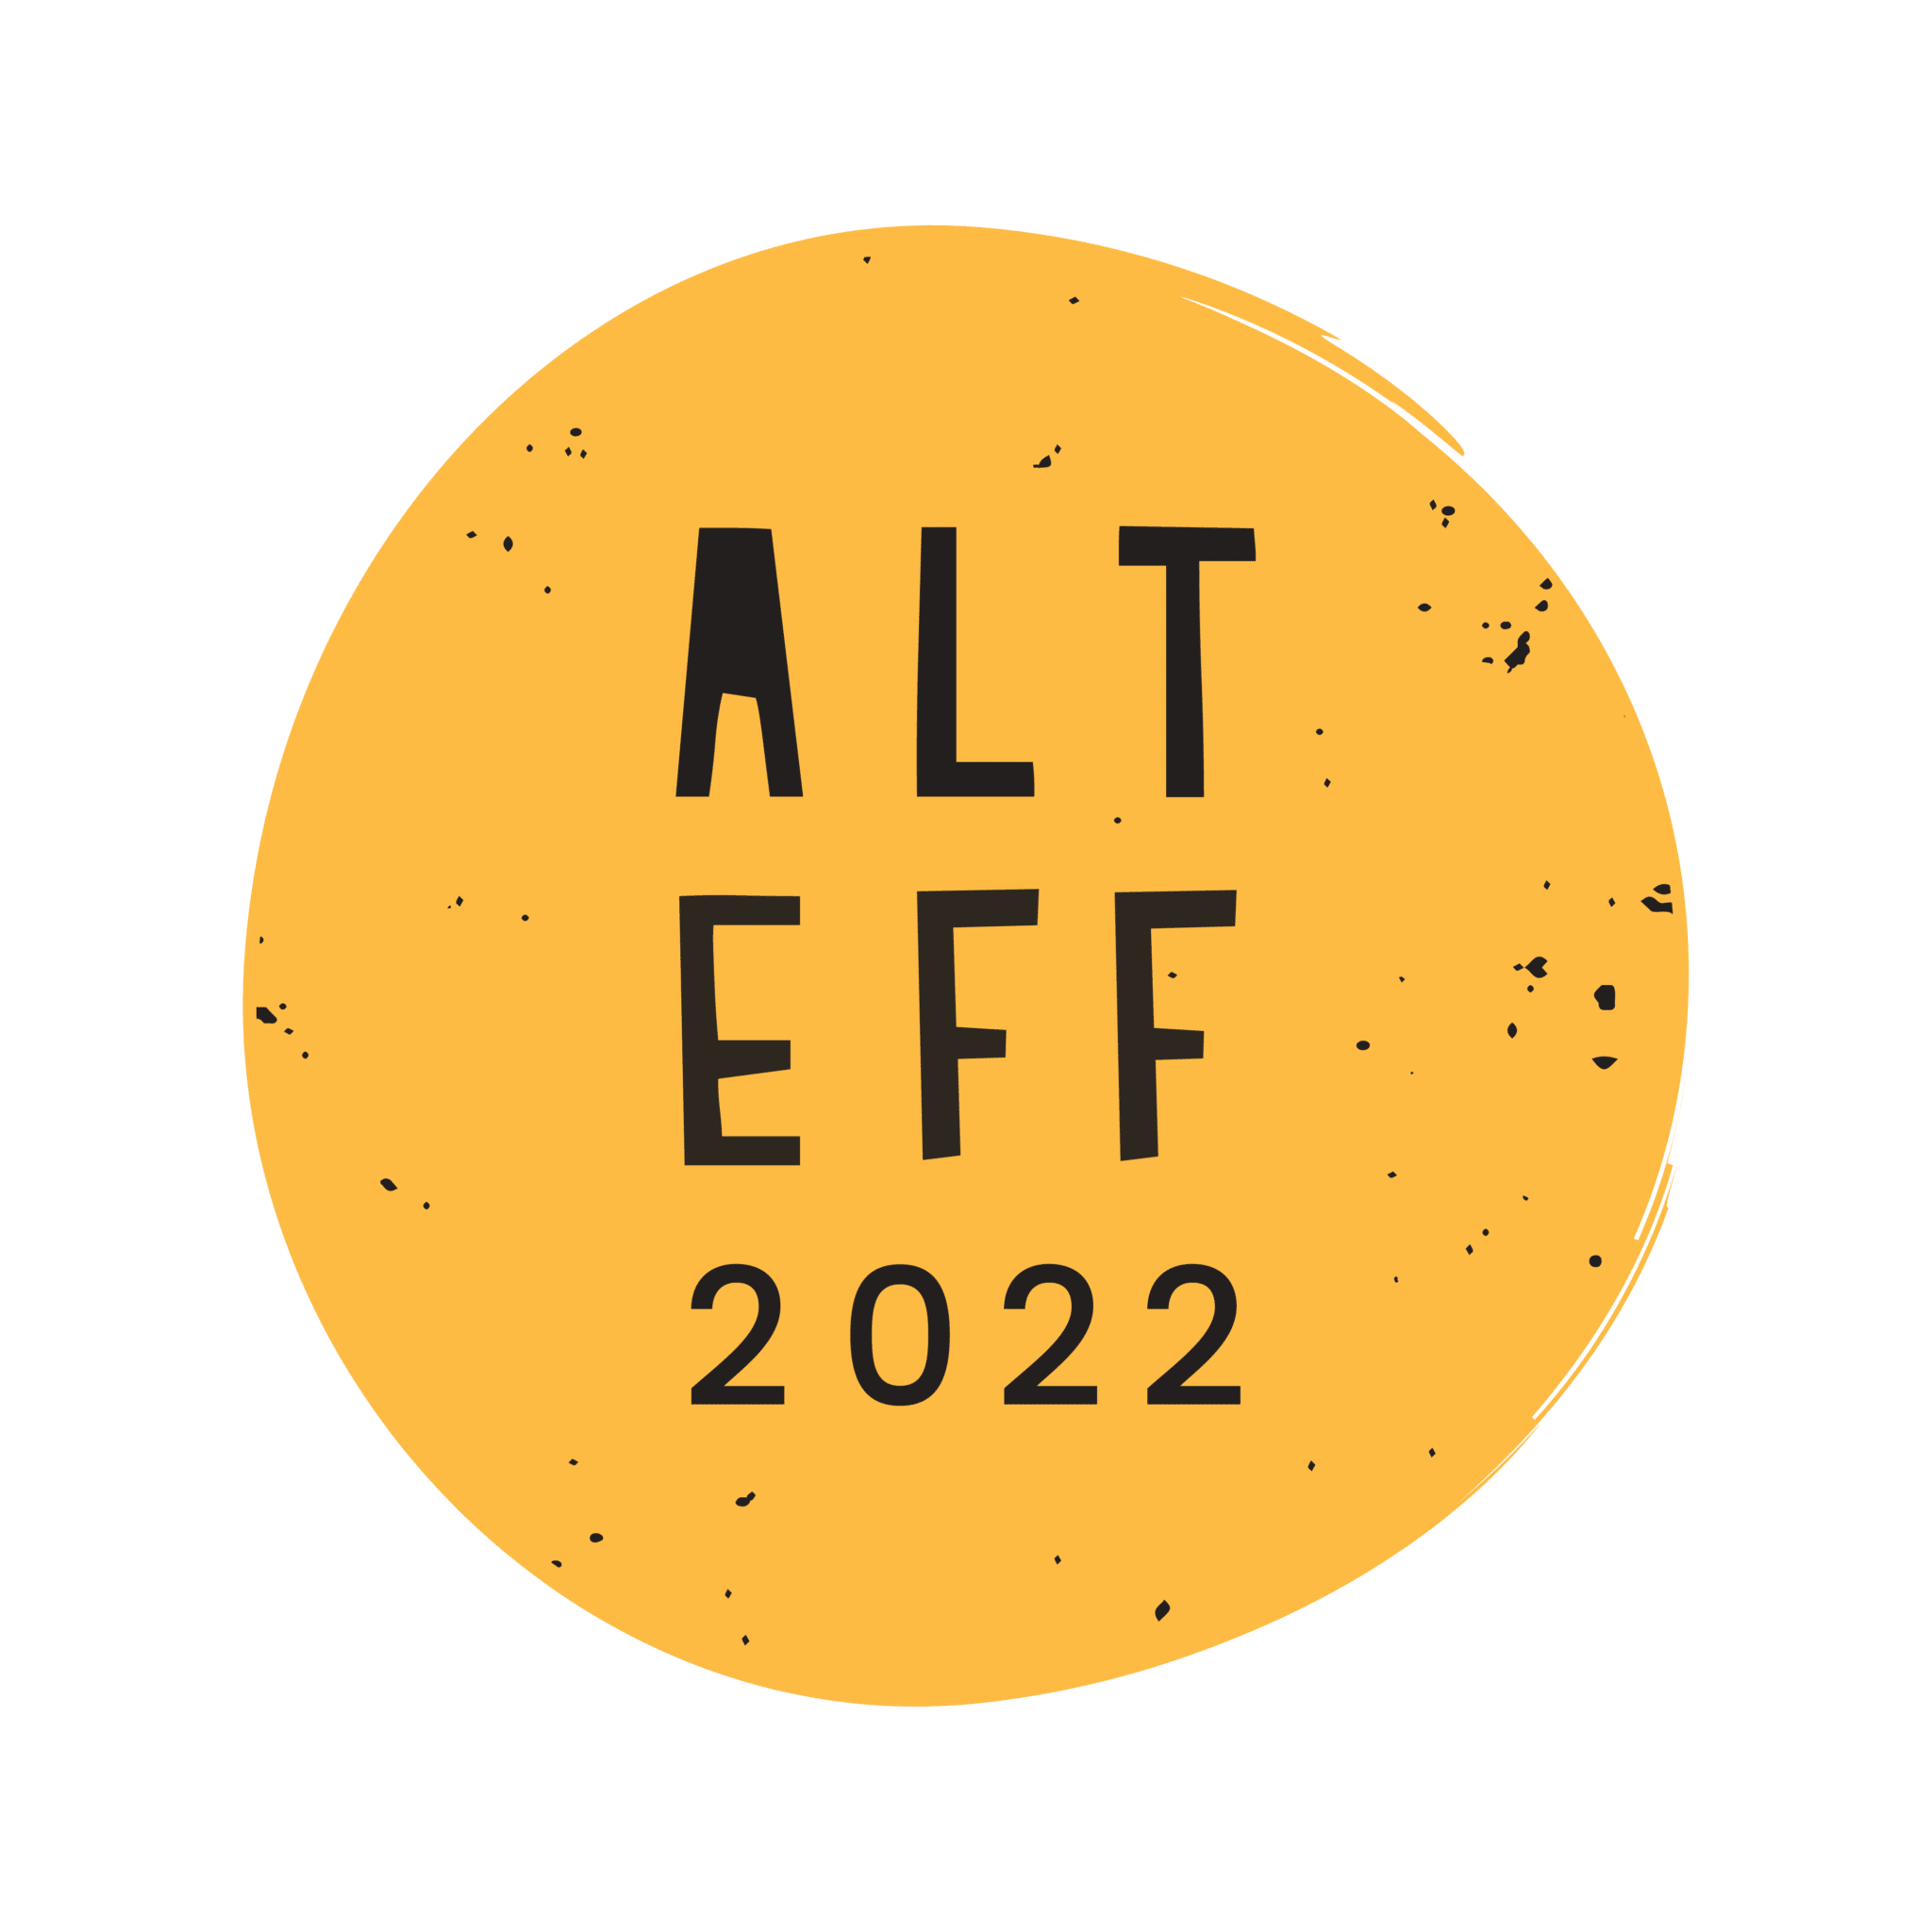 All Living Things Environmental Film Festival 2022 logo. Photo: All Living Things Environmental Film Festival